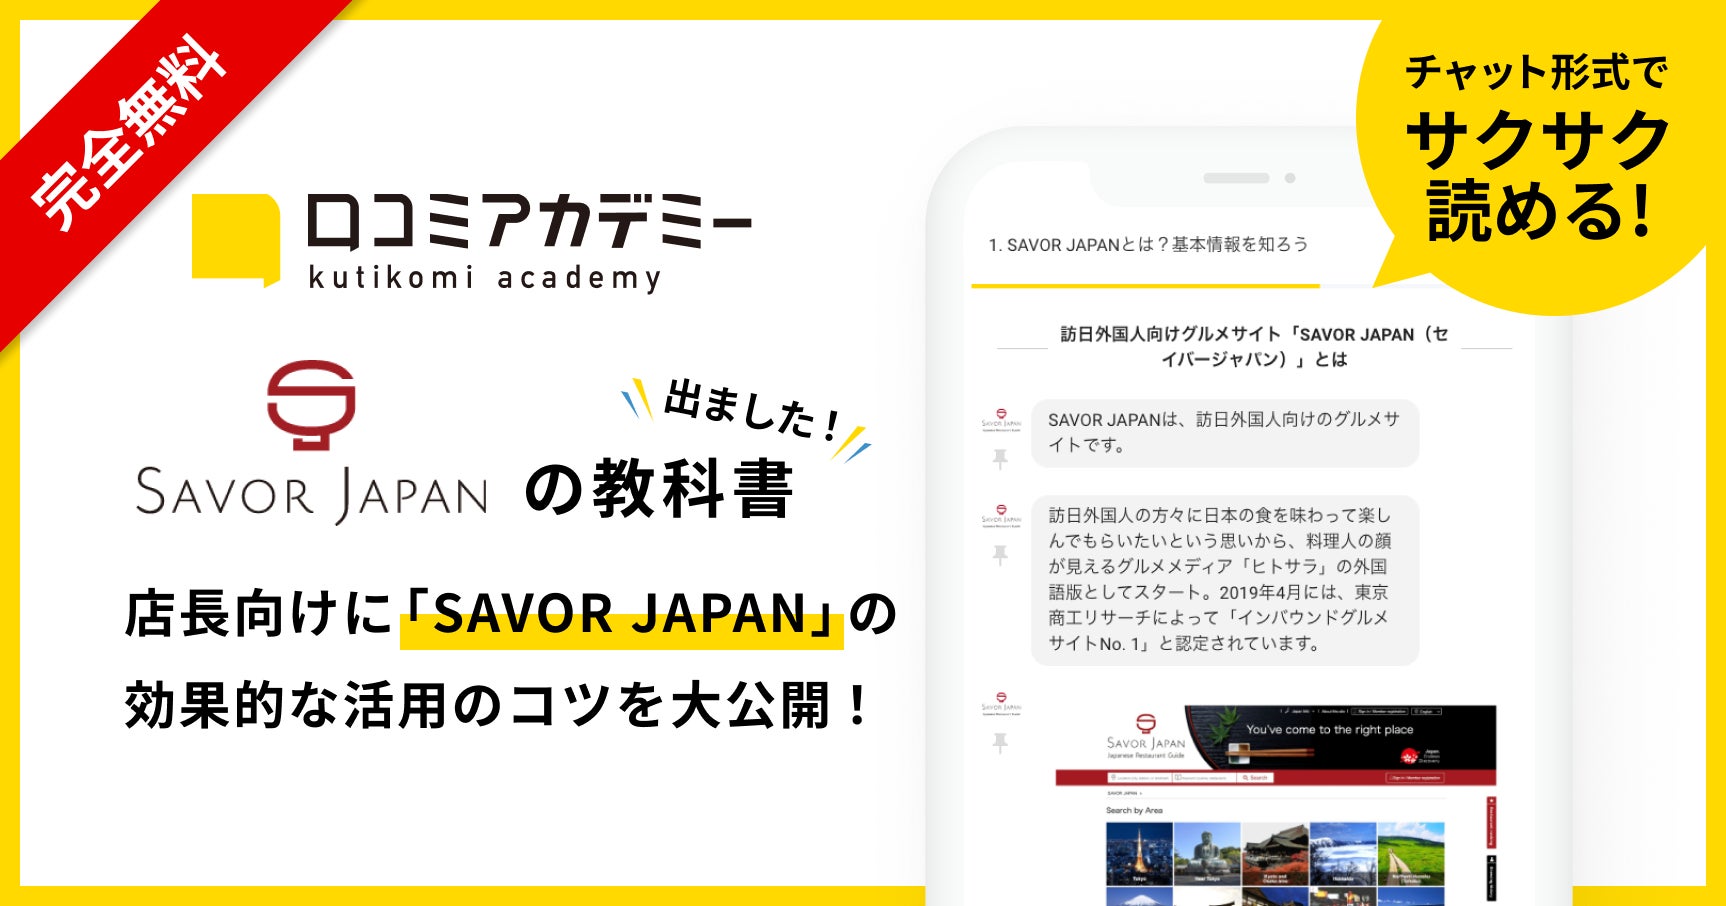 AI店舗支援SaaS「口コミコム」運営のmov、訪日外国人向け飲食店紹介サイト「SAVOR JAPAN」の活用法を徹底解説する教科書を「口コミアカデミー」で公開